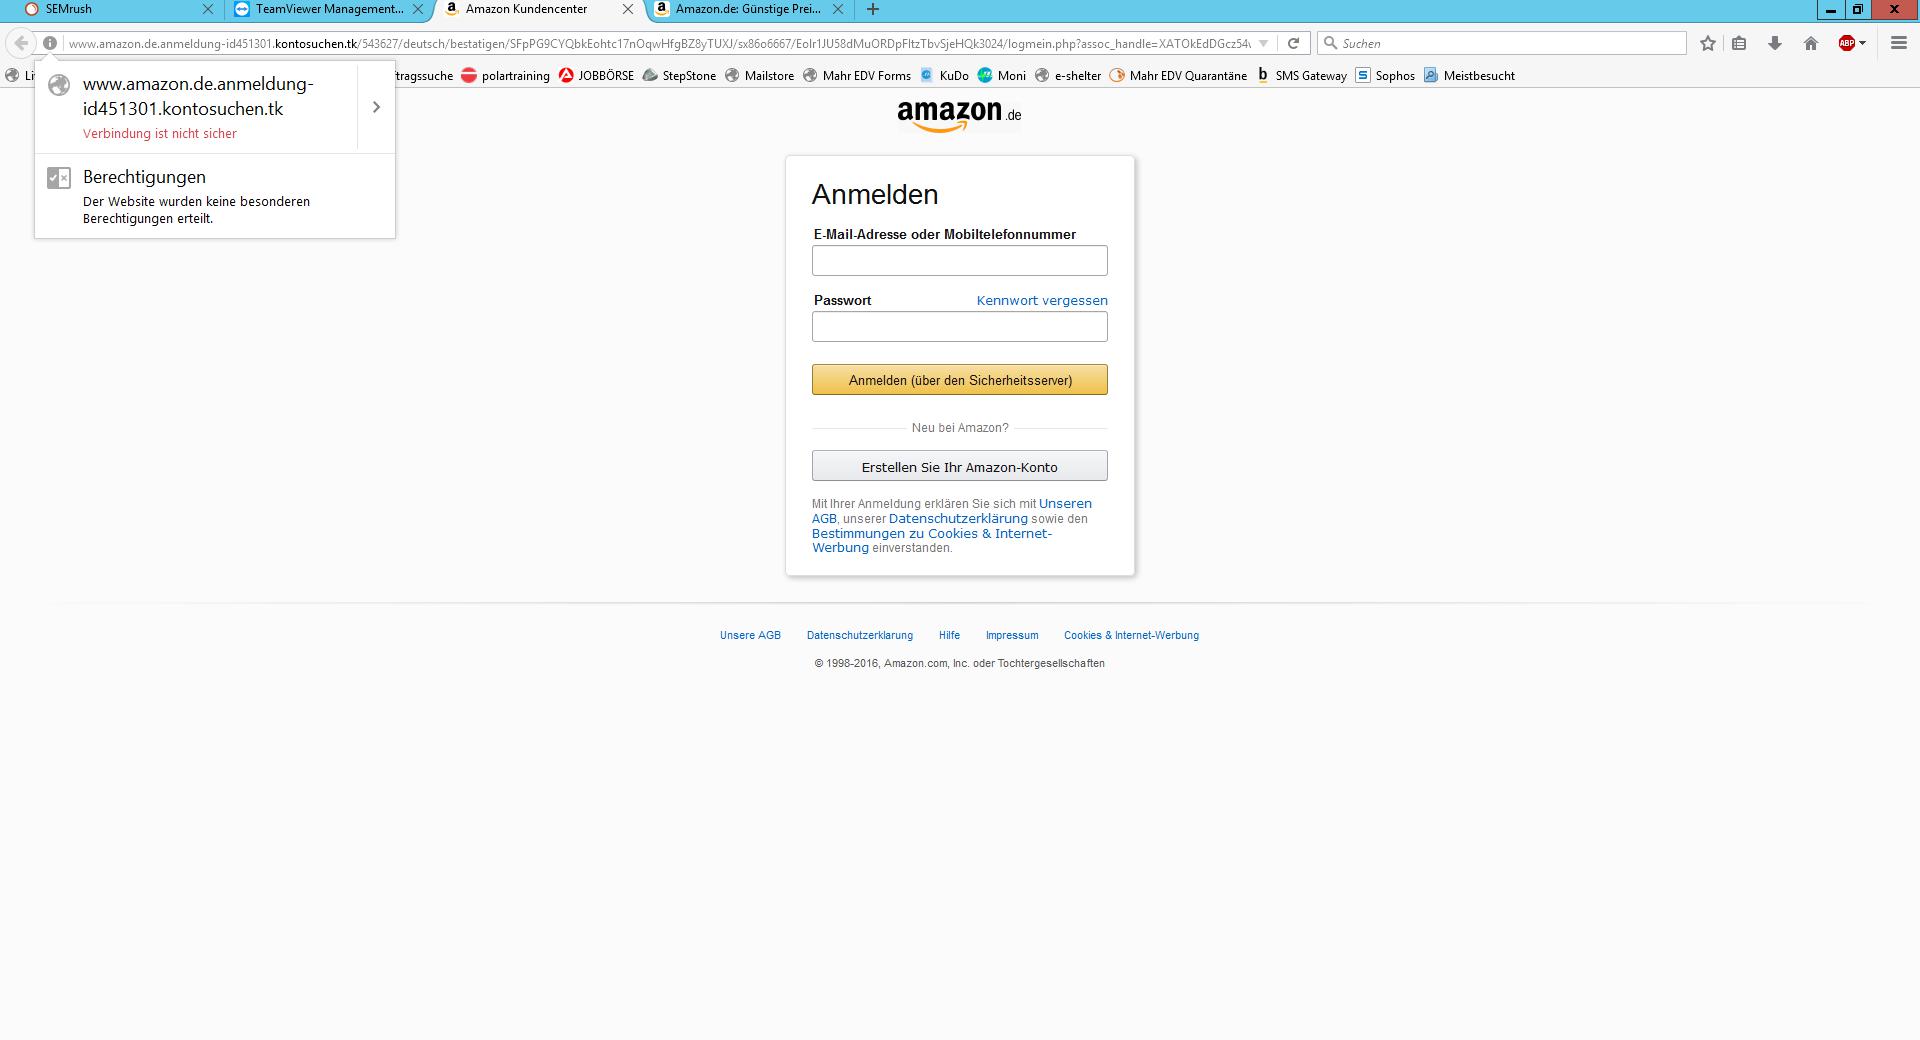 Gefälschte Amazon Emails